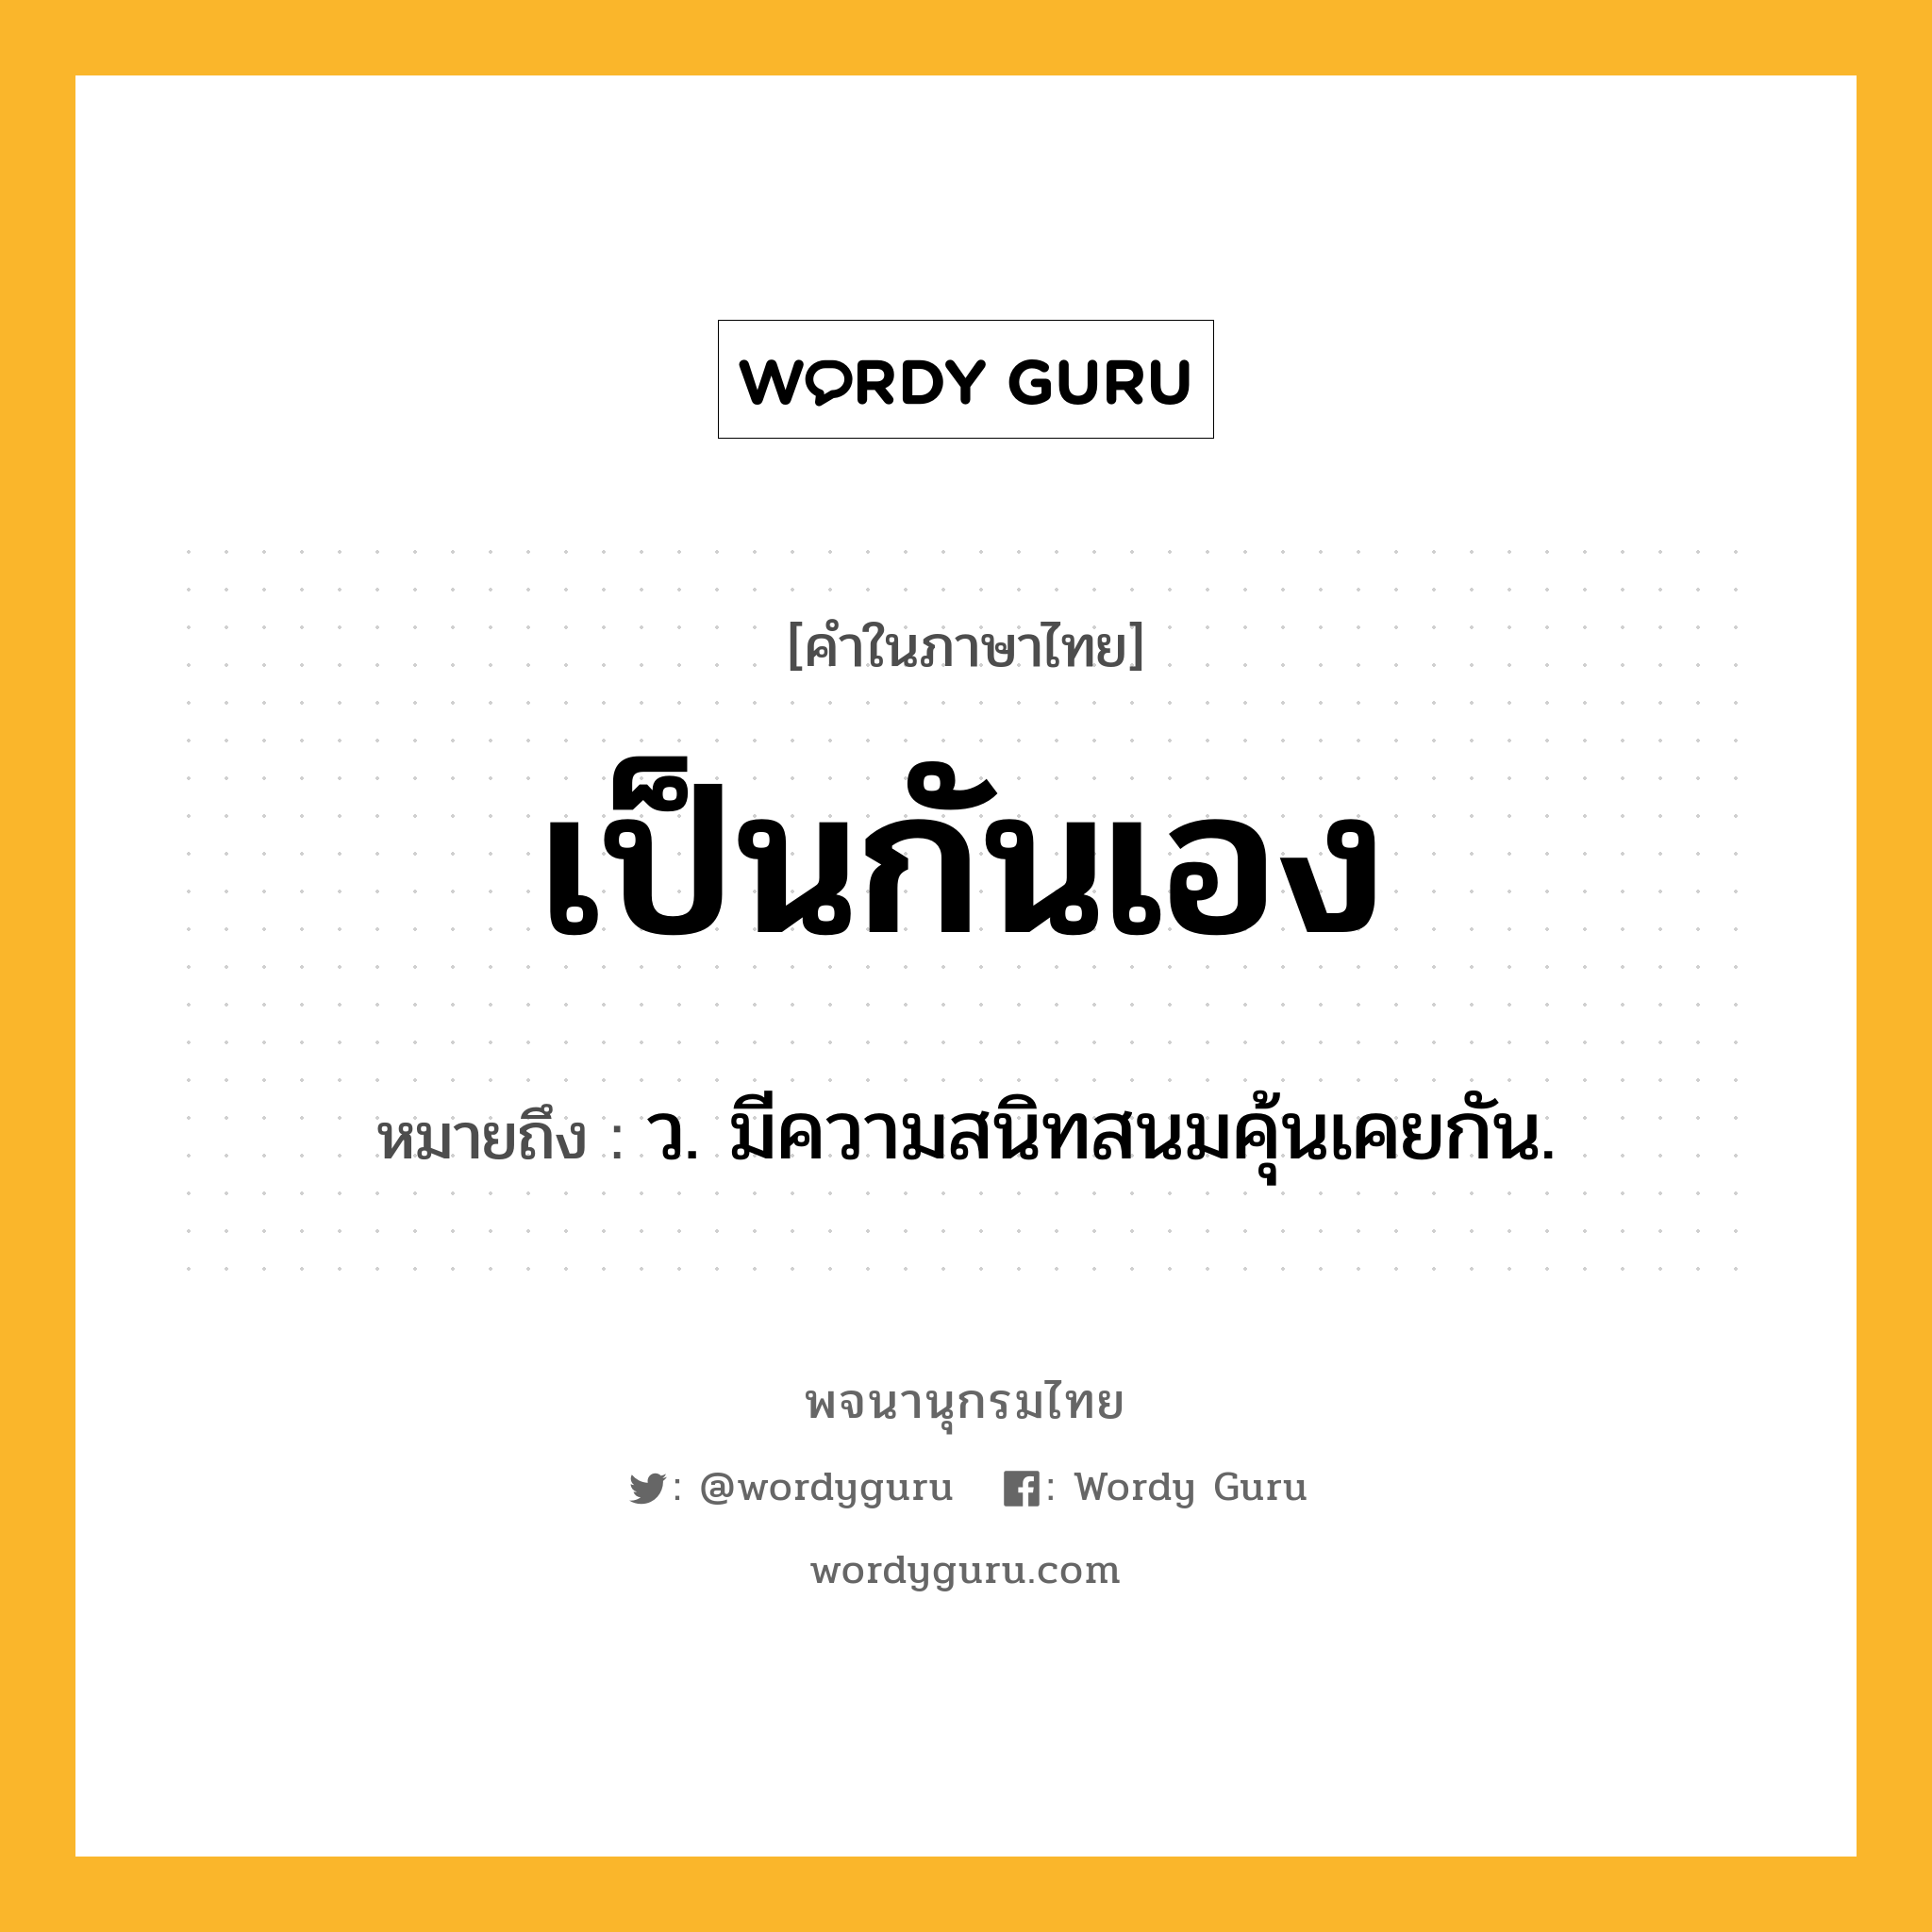 เป็นกันเอง หมายถึงอะไร?, คำในภาษาไทย เป็นกันเอง หมายถึง ว. มีความสนิทสนมคุ้นเคยกัน.